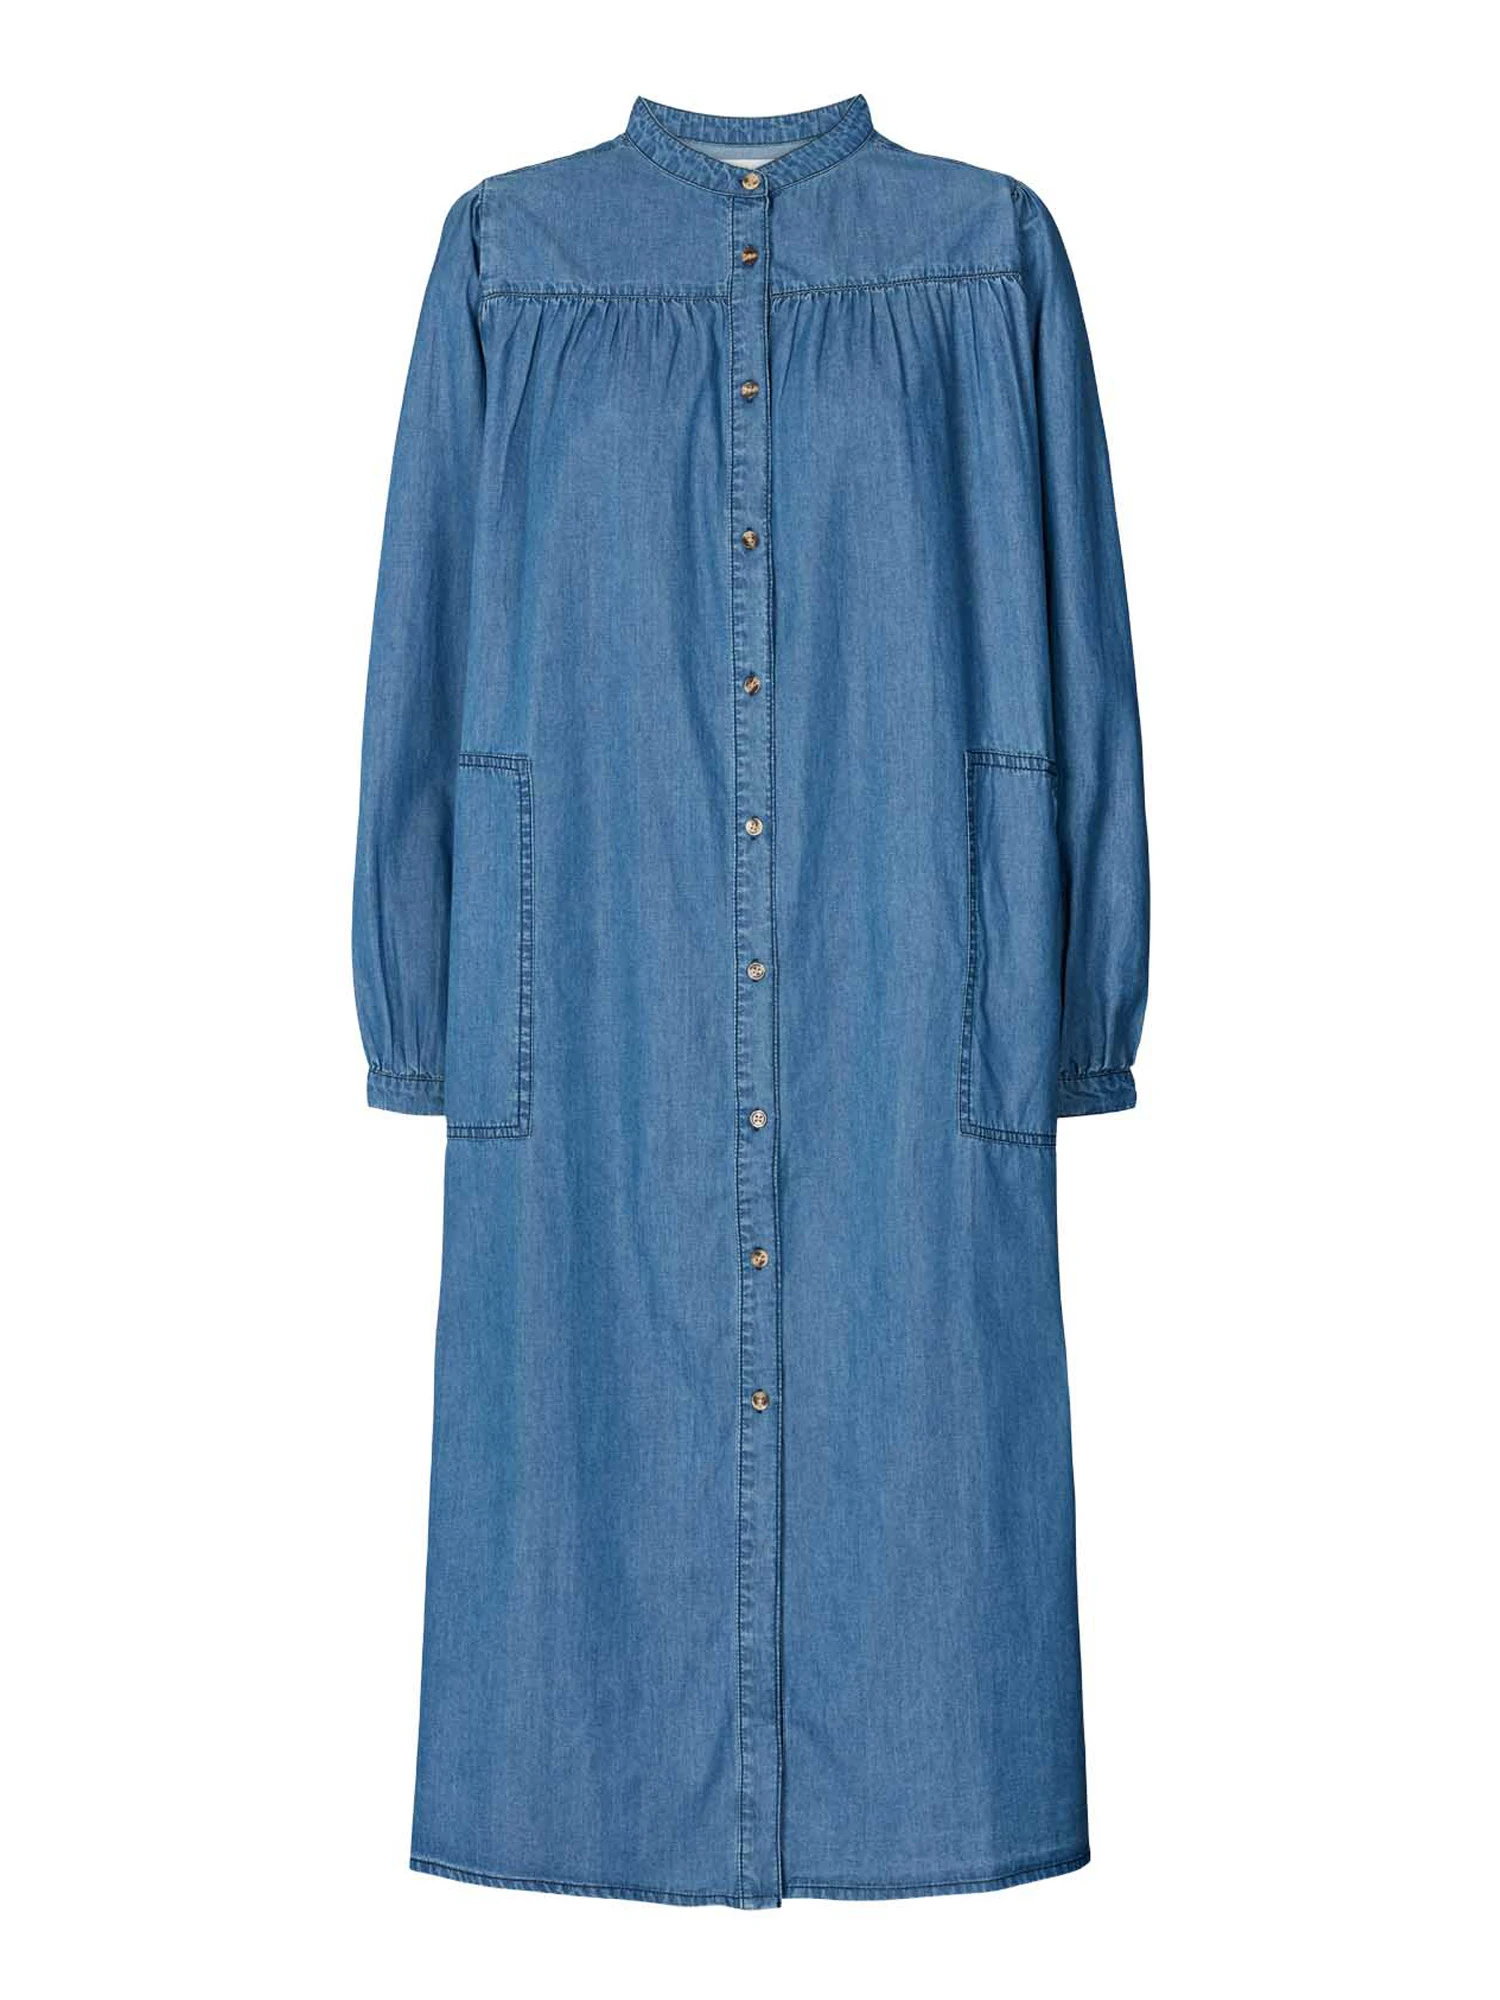 Lollys Laundry Jess Kjole | Stort udvalg af kjoler online her